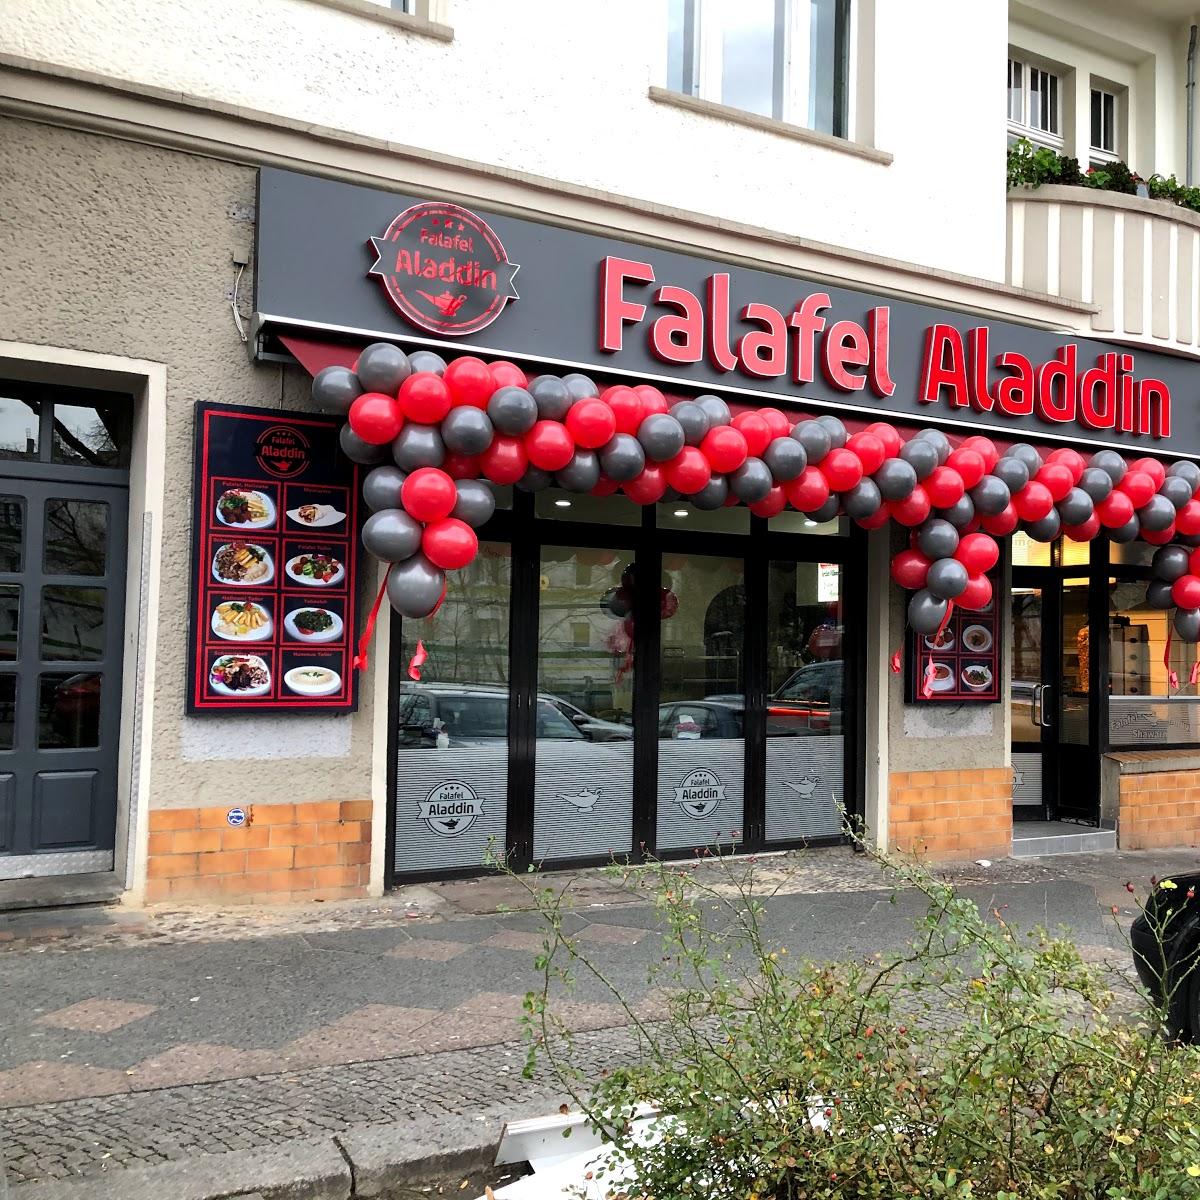 Restaurant "Falafel Aladdin 2 -" in Berlin